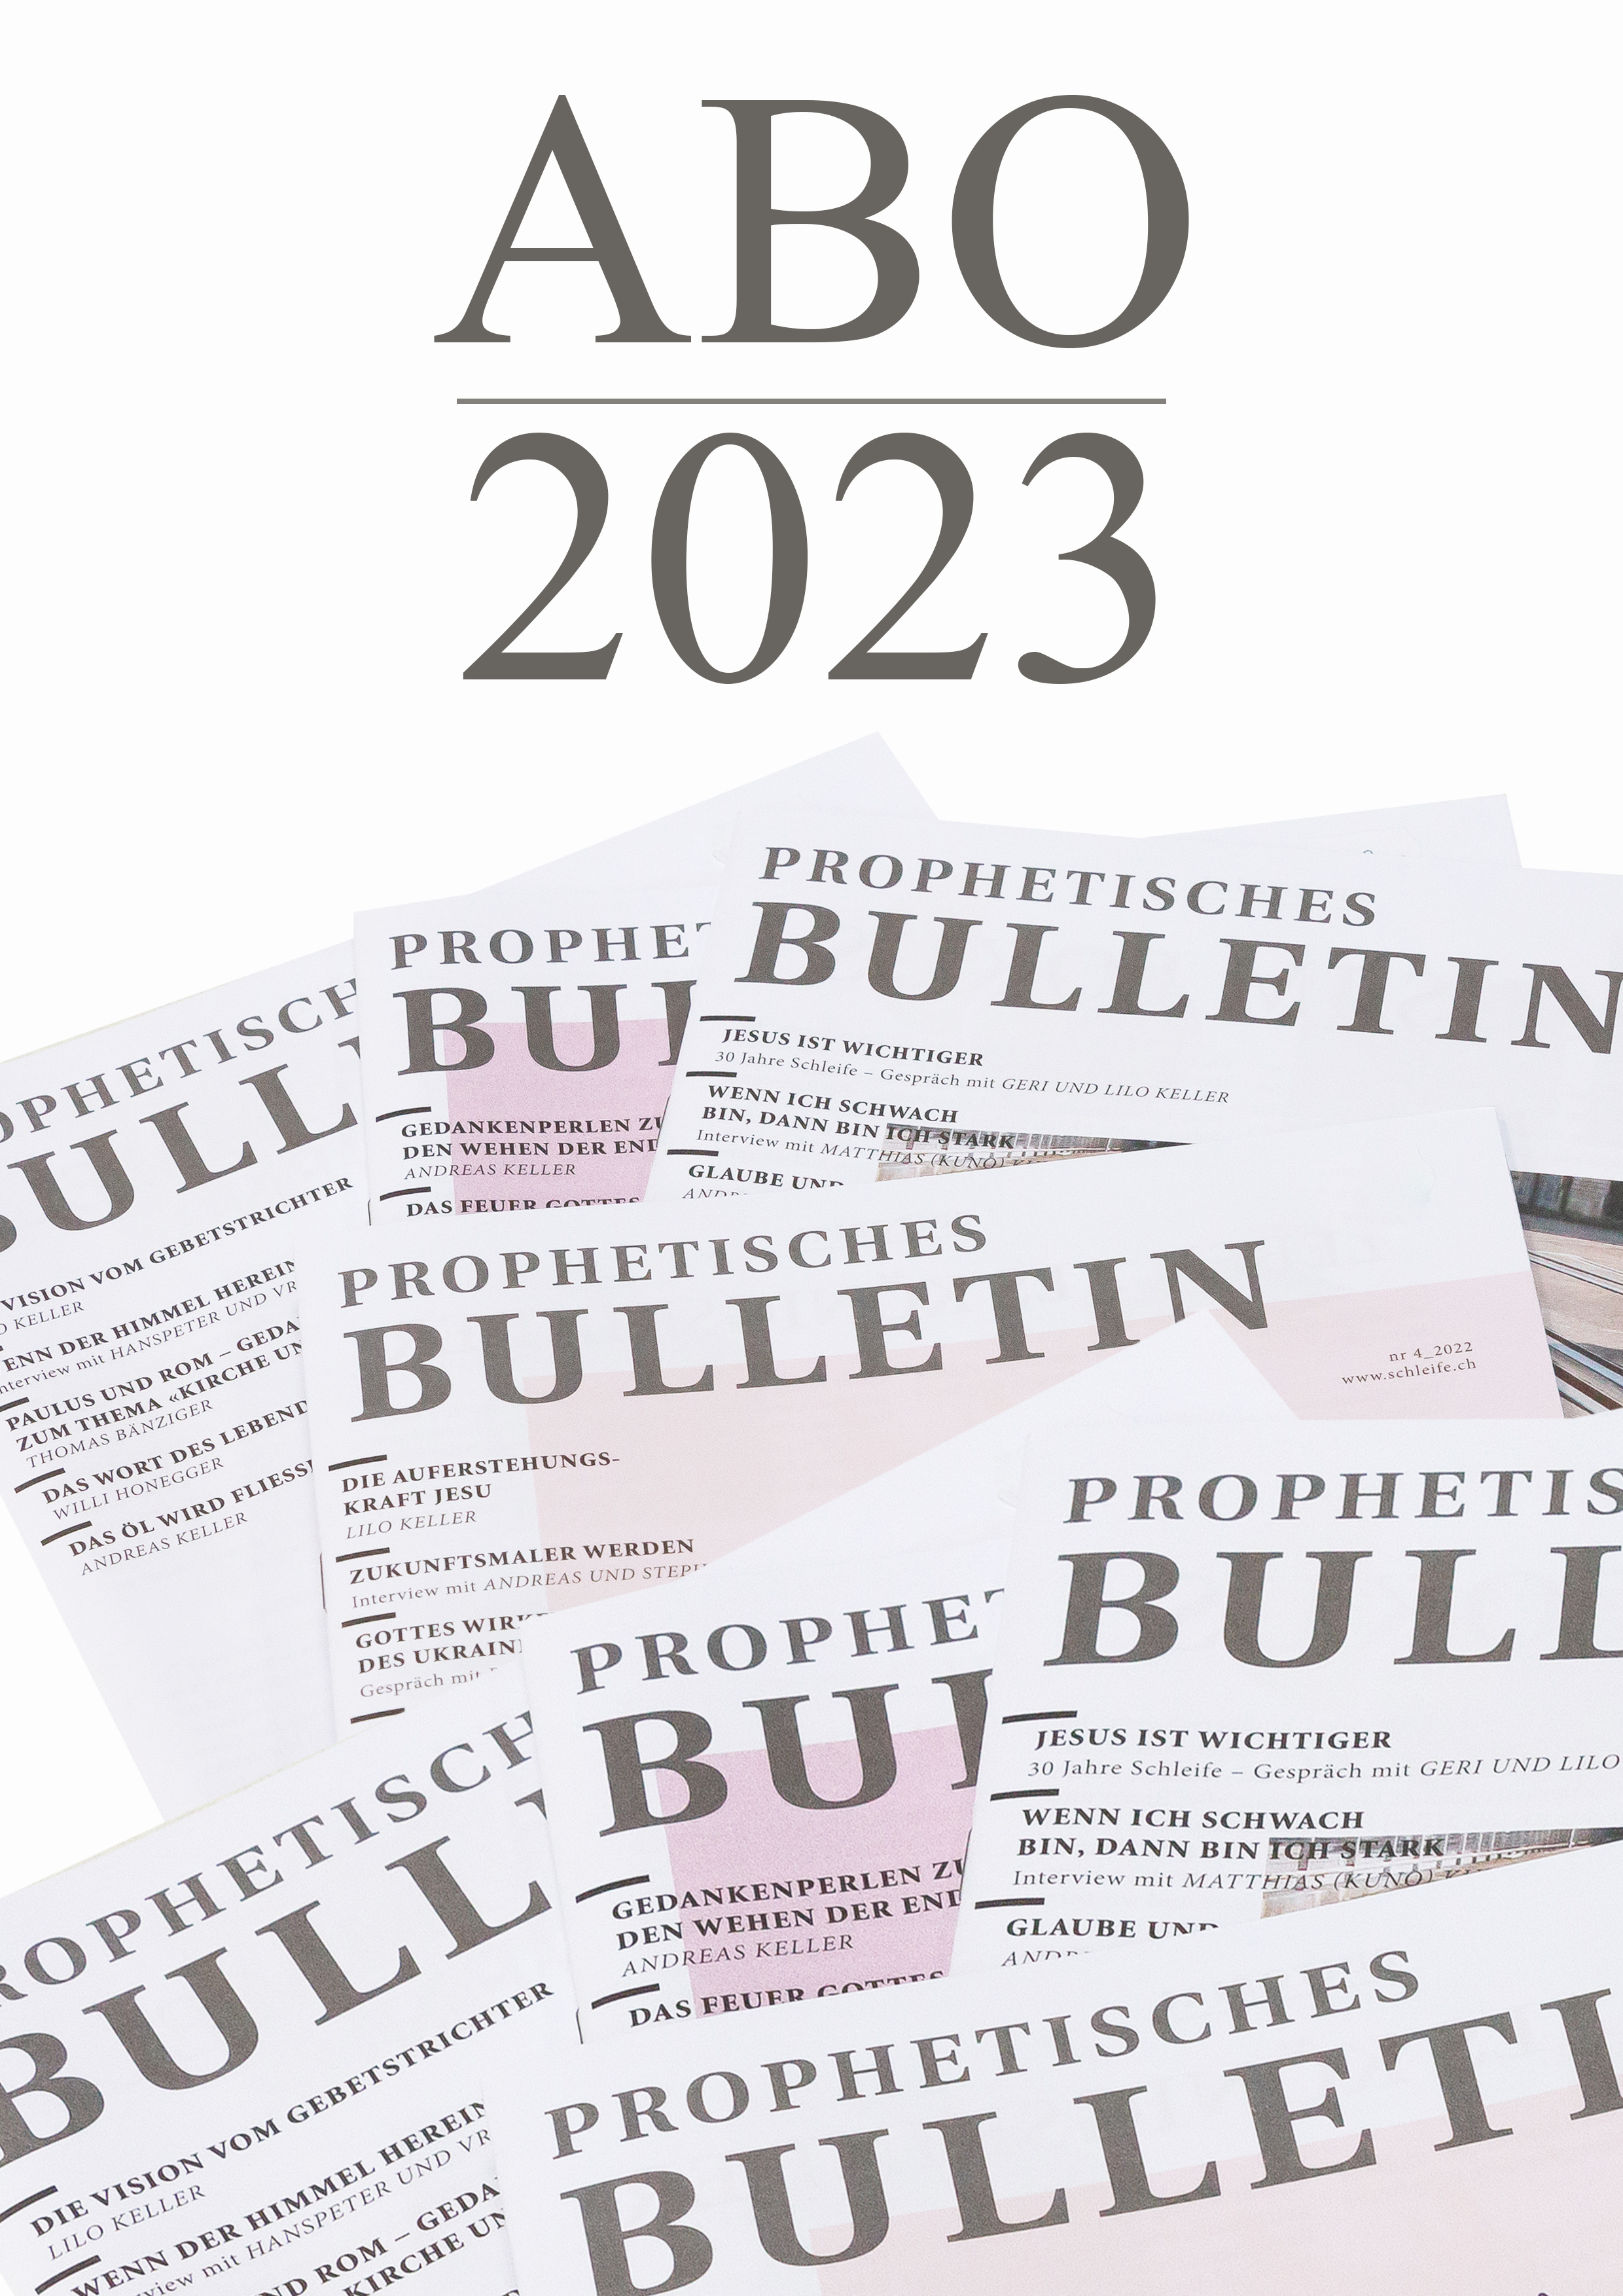 Abo Prophetisches Bulletin 2023 (Restjahr)